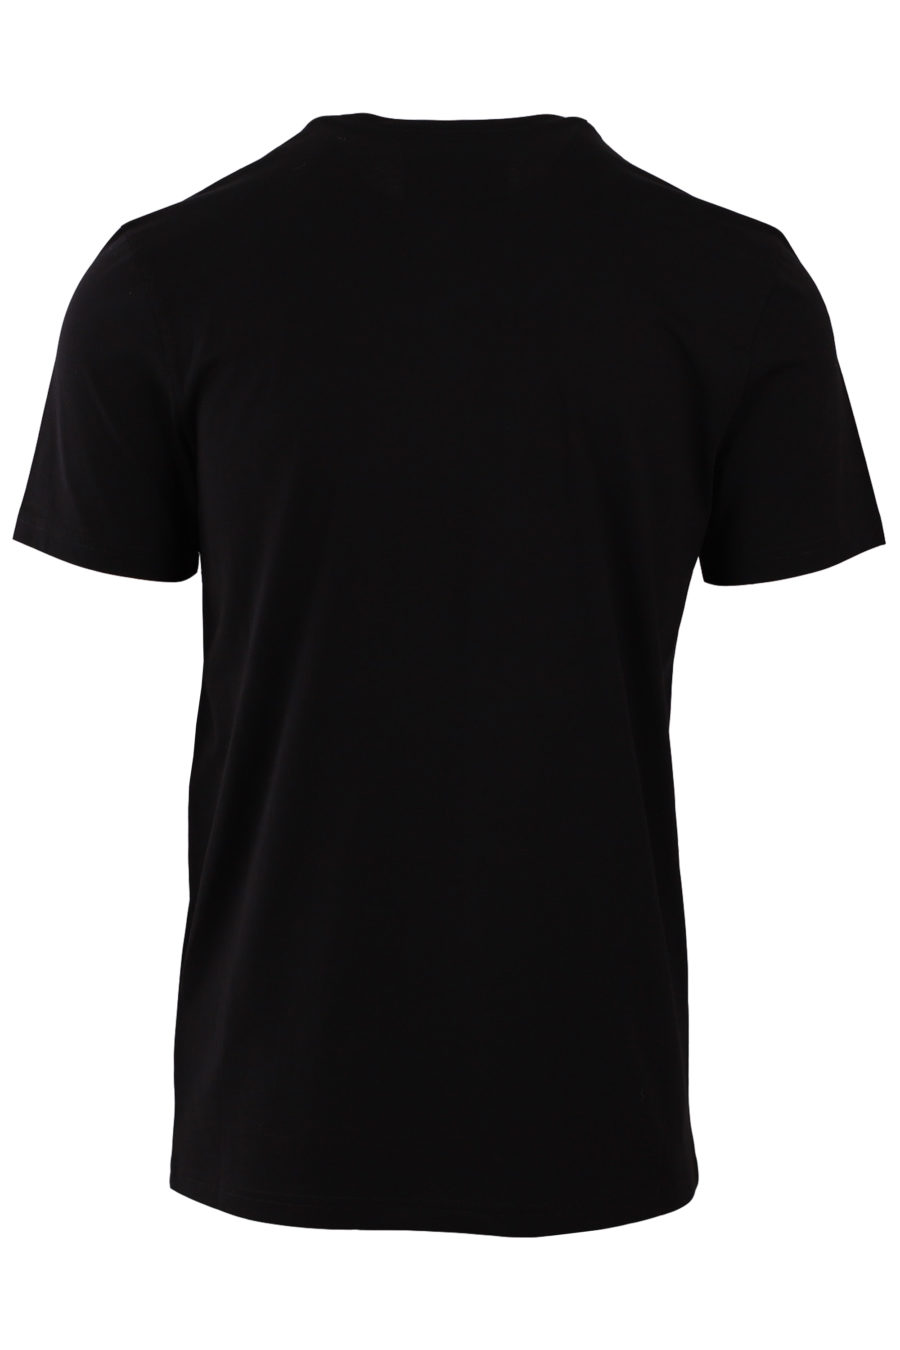 Camiseta negra con logo brillante - e7ee7e000d66039dc1e2df8fddd518dd2cc256a3